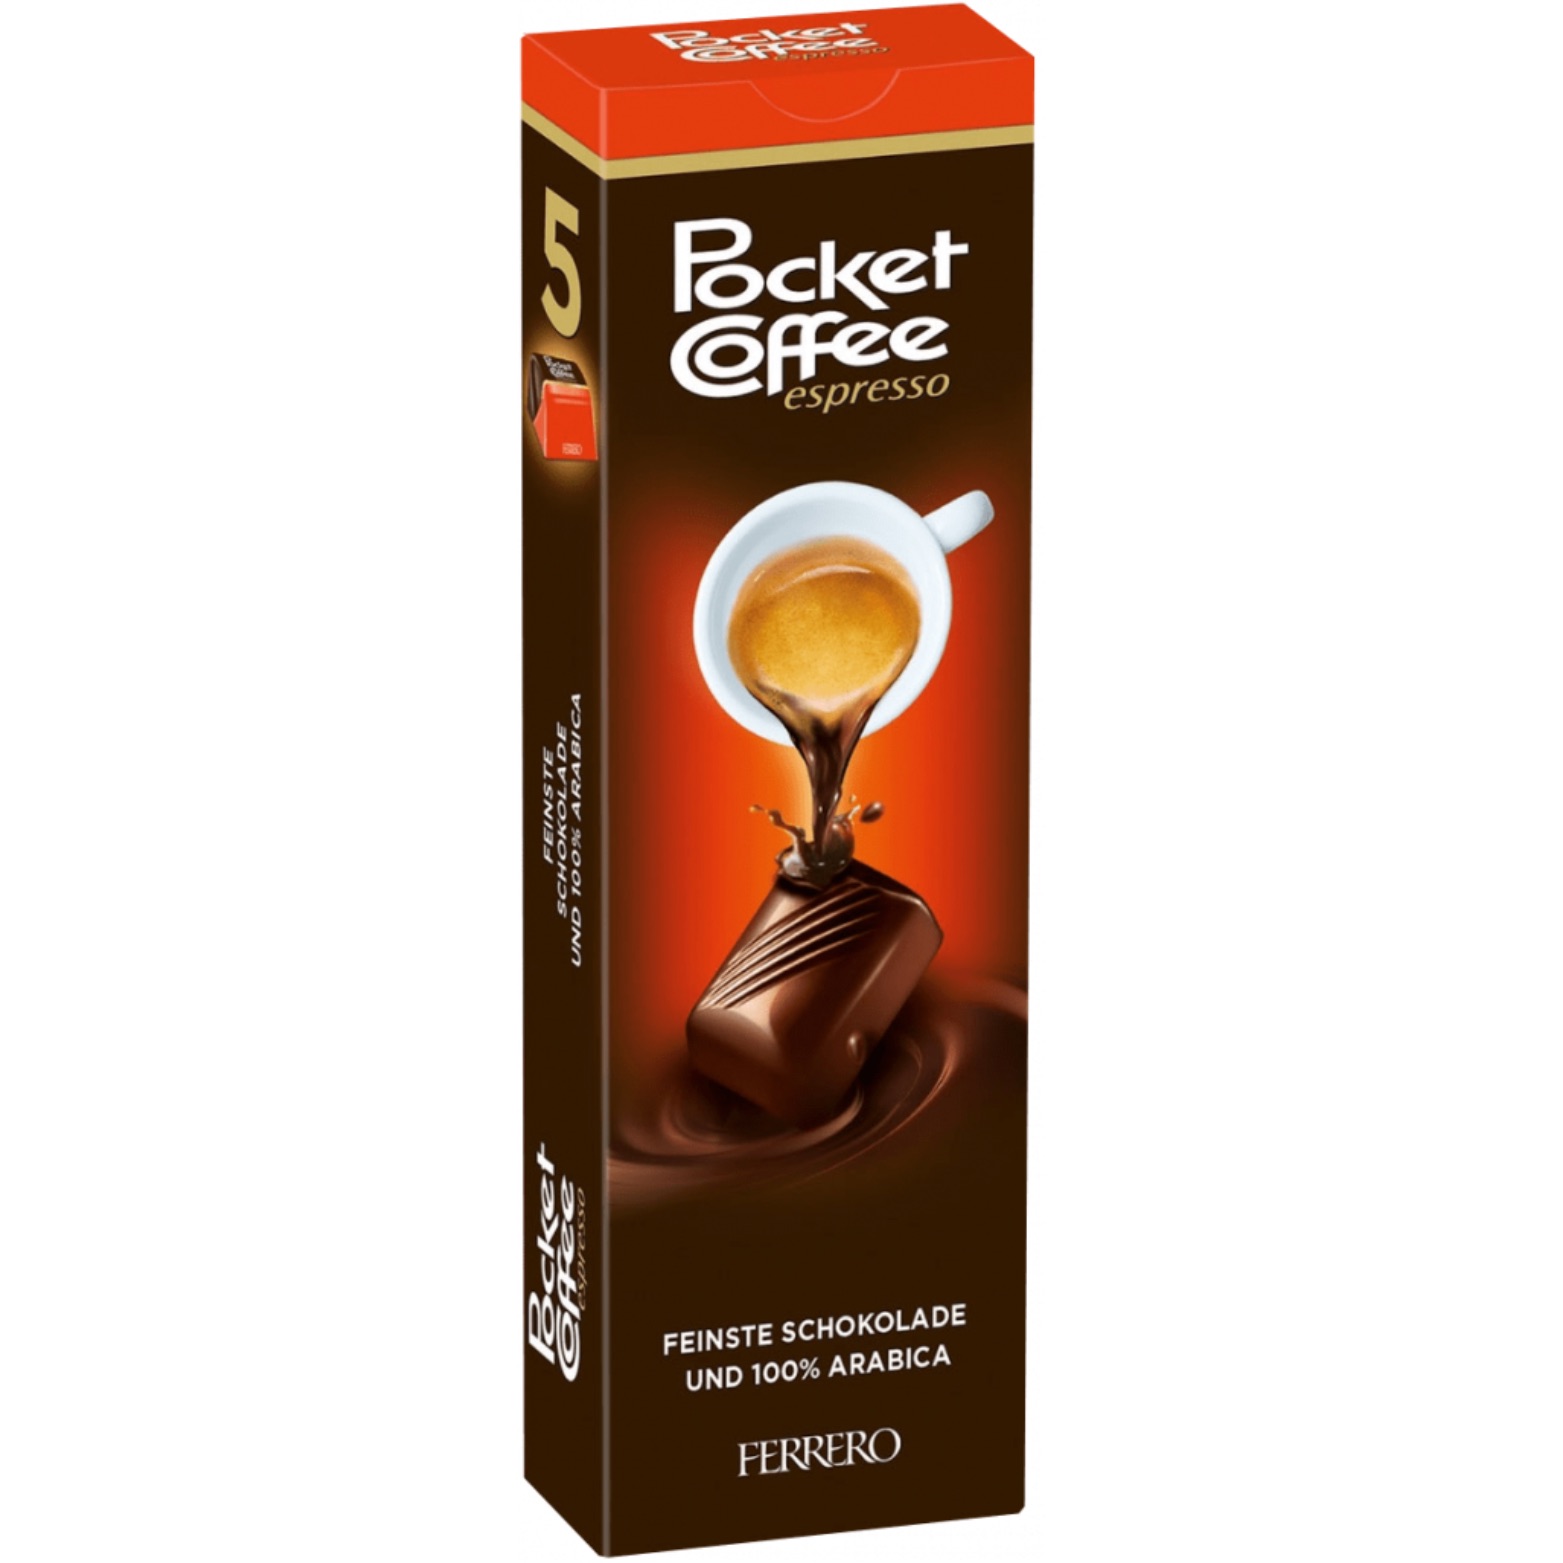 Pocket Coffee Espresso “Ferrero” – 5er Riegel, 62,5 g